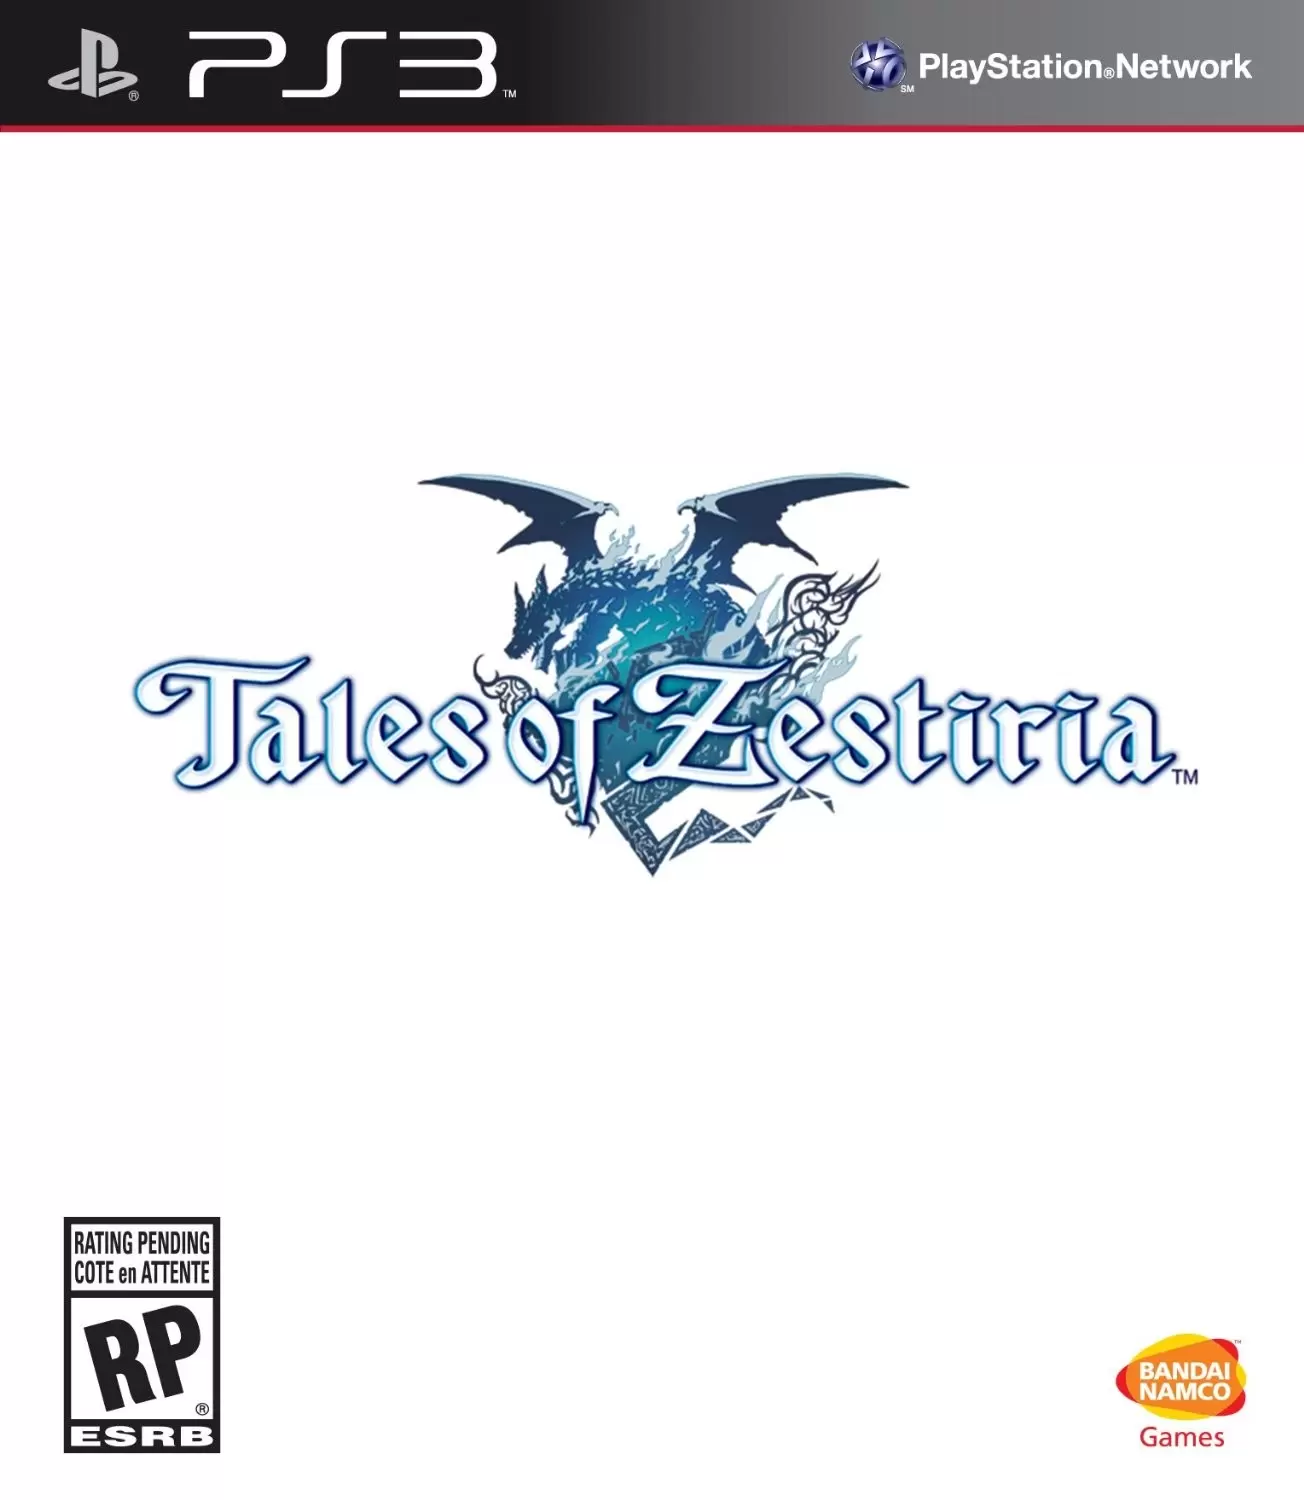 PS3 Games - Tales of Zestiria